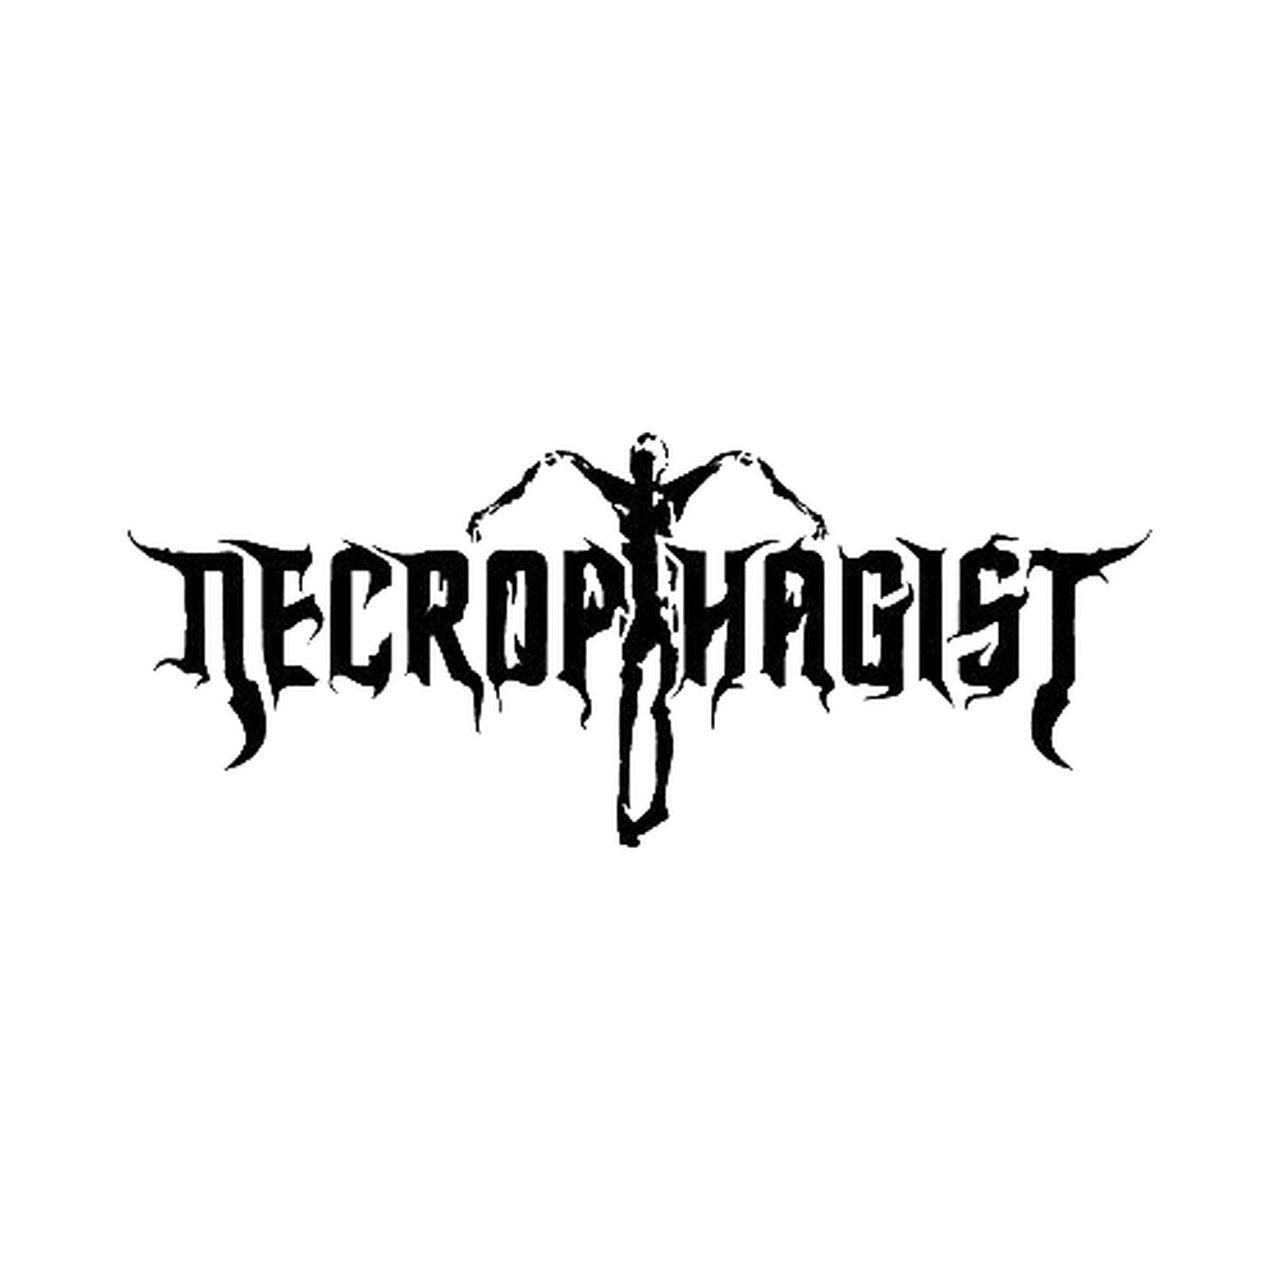 Necrophagist Logo - Necrophagist Band Logo Vinyl Sticker